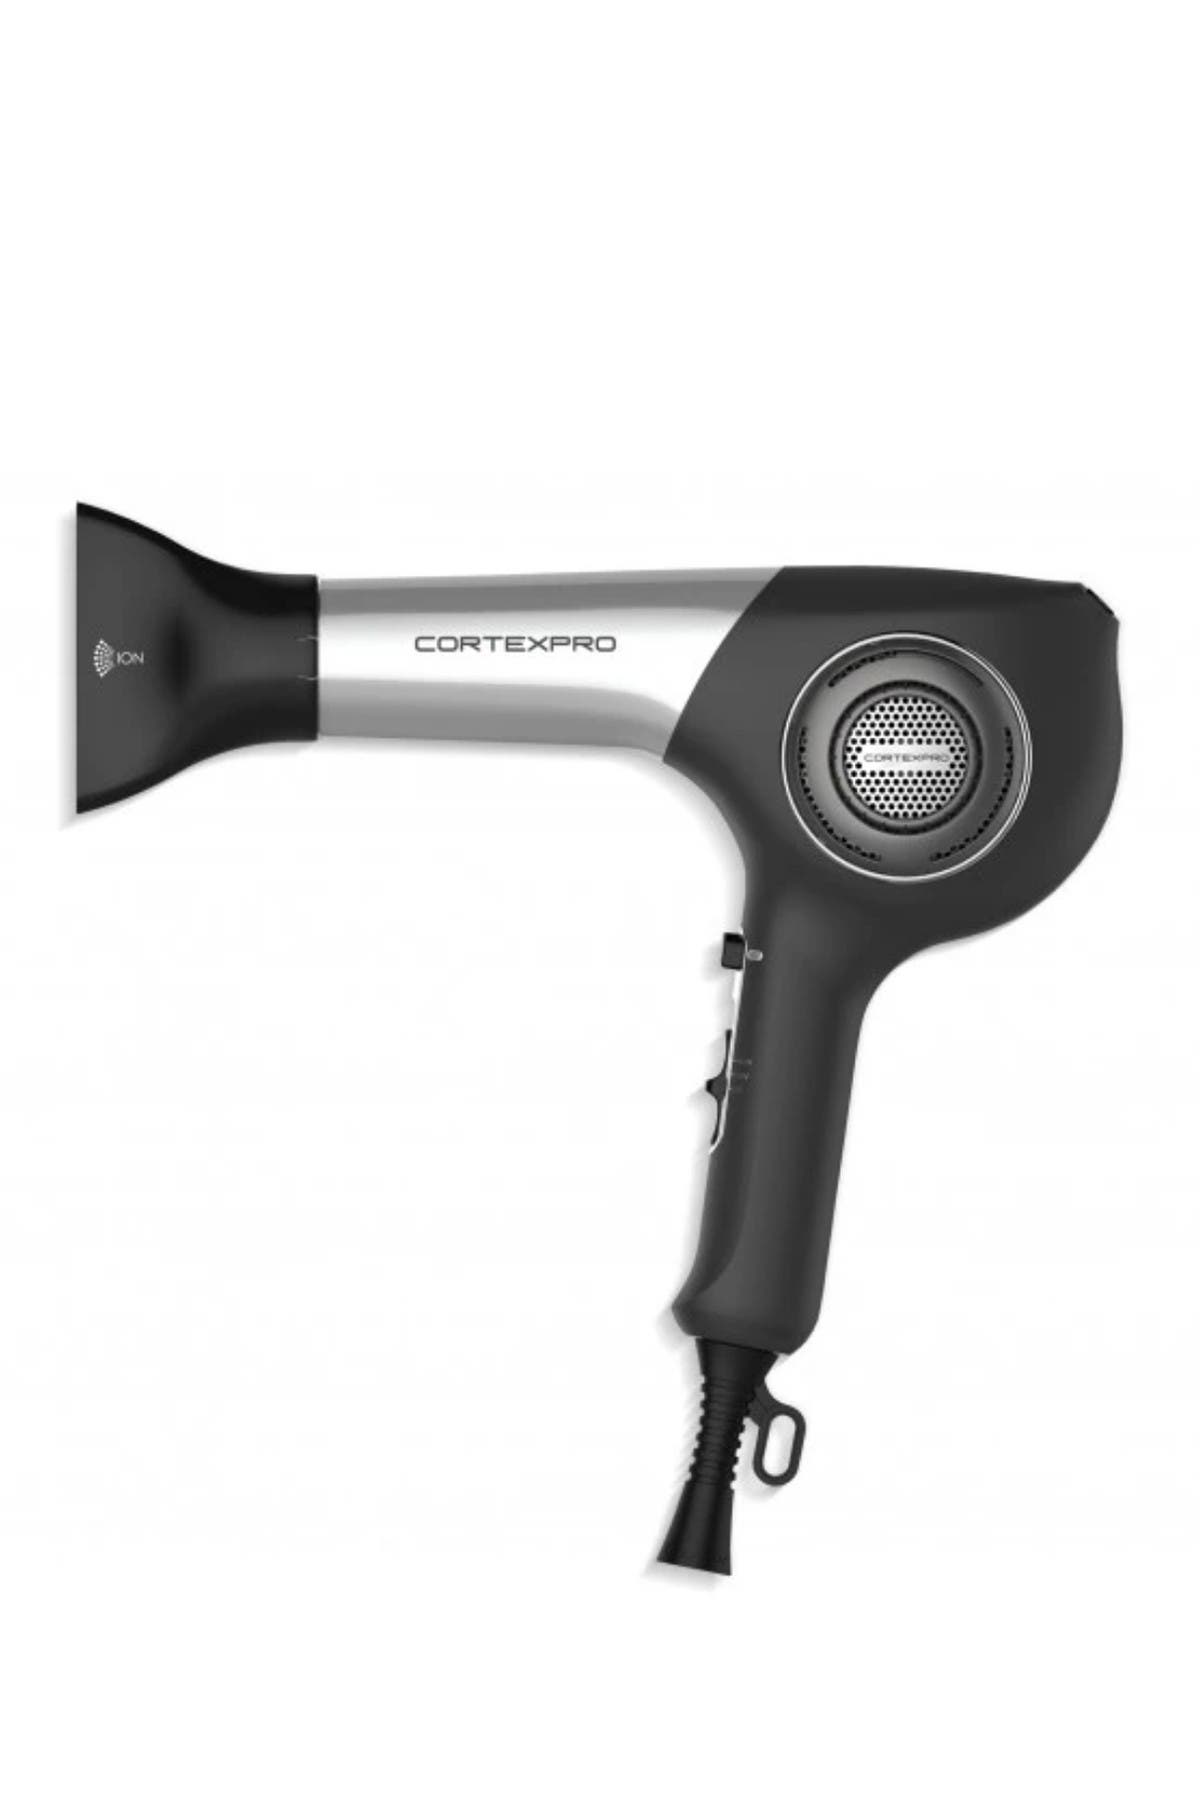 Cortex Usa Cortexpro Hair Dryer In Black / Silver